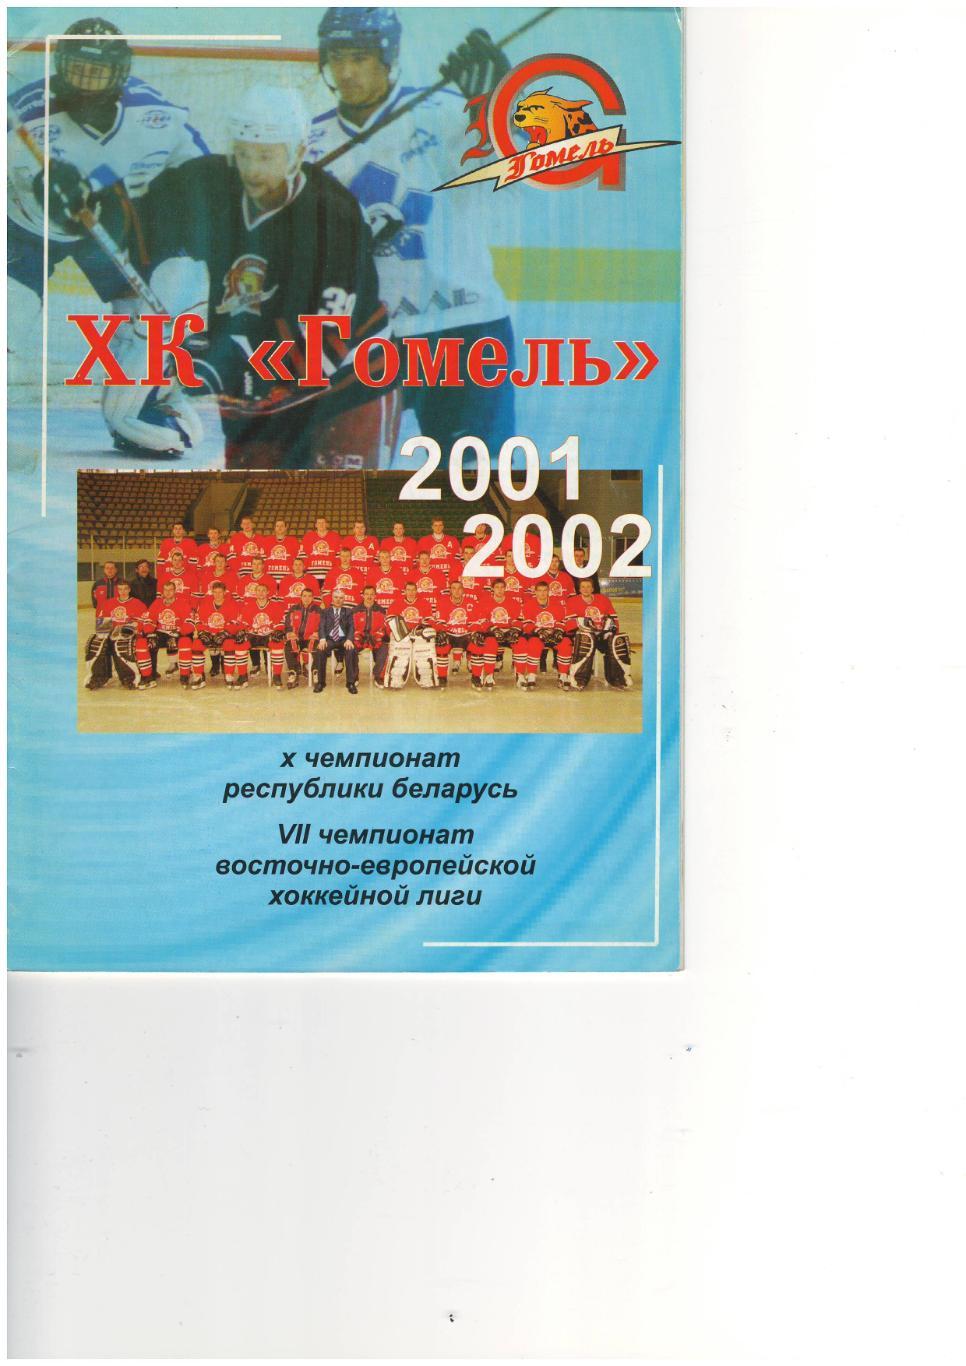 Гомель Беларусь - 2001-2002